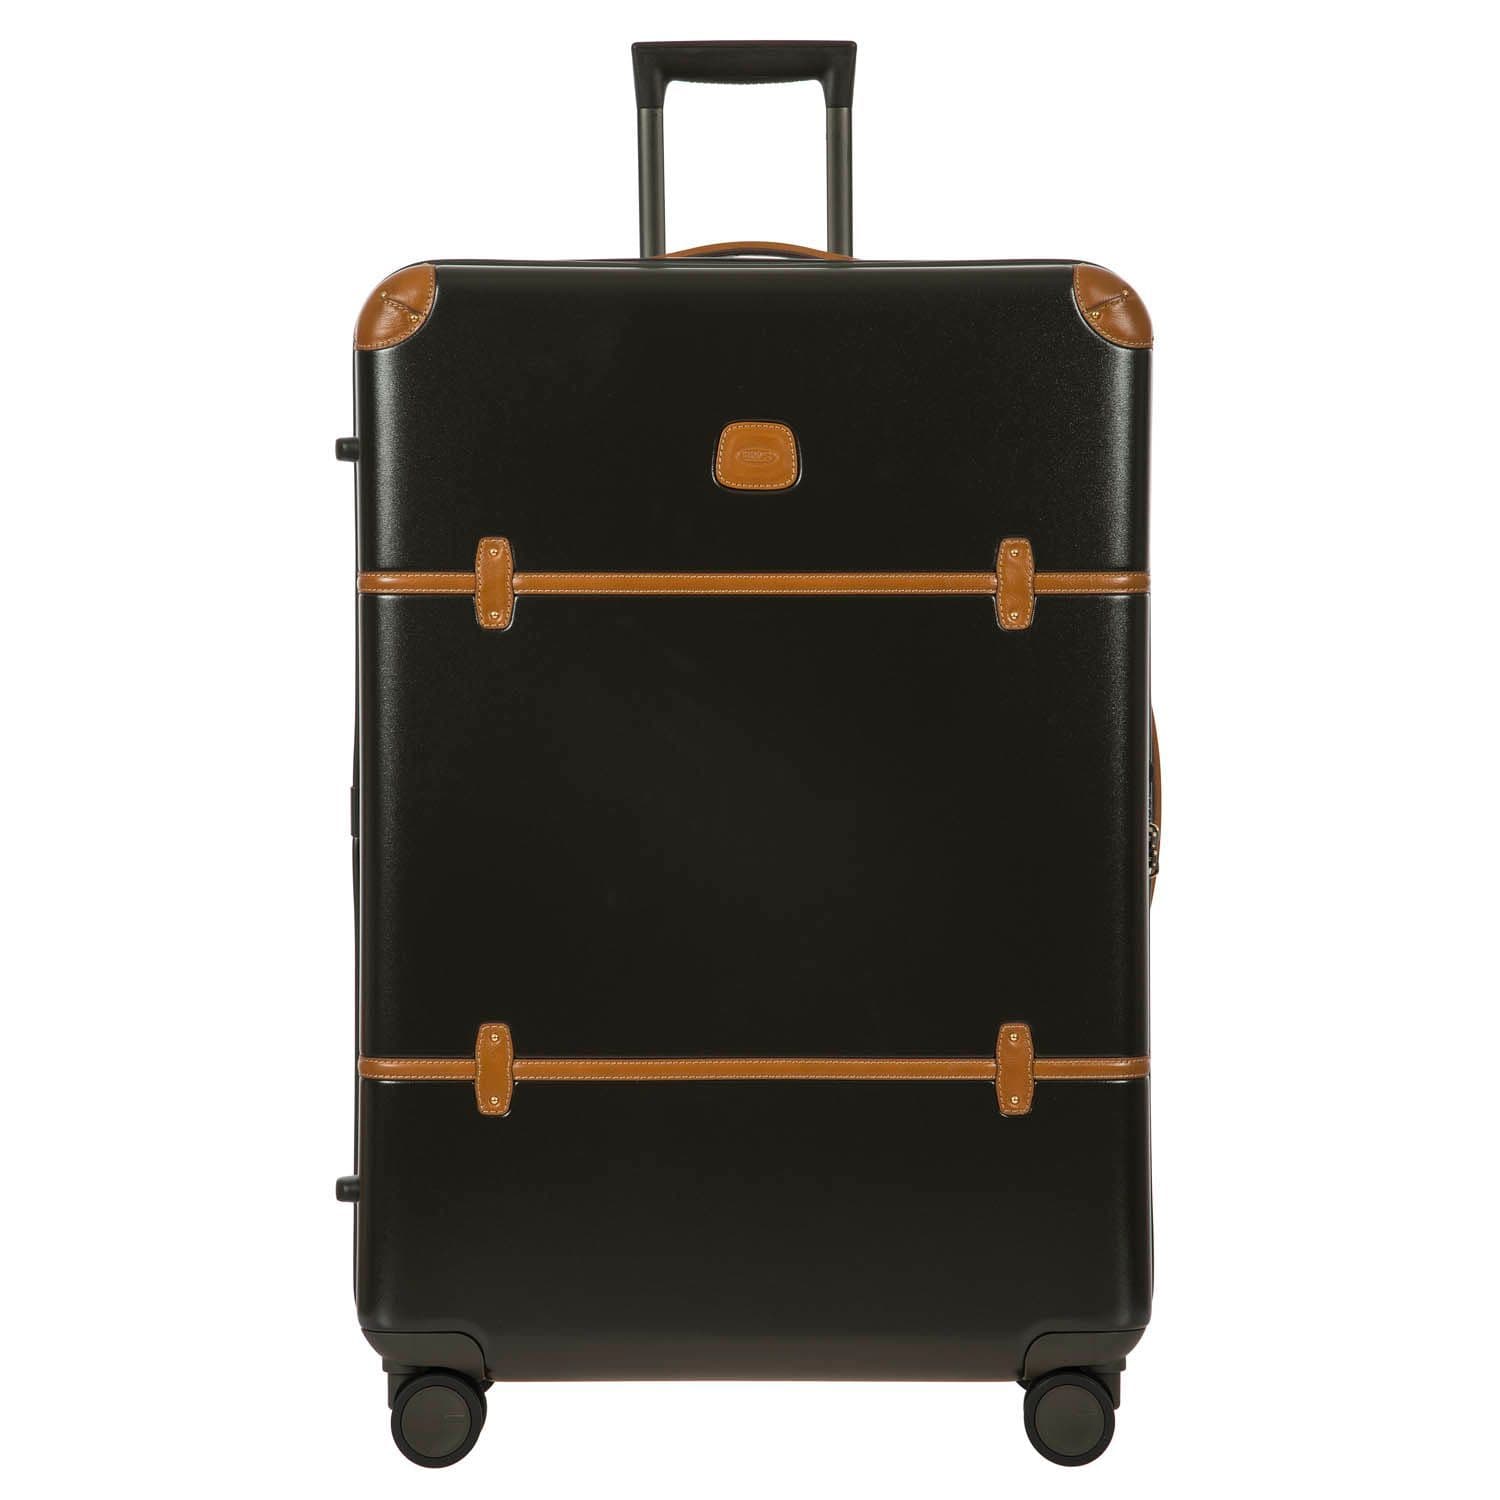 BELLAGIO V2.0 810MM SPINNER TRUNK Luggage Bric&